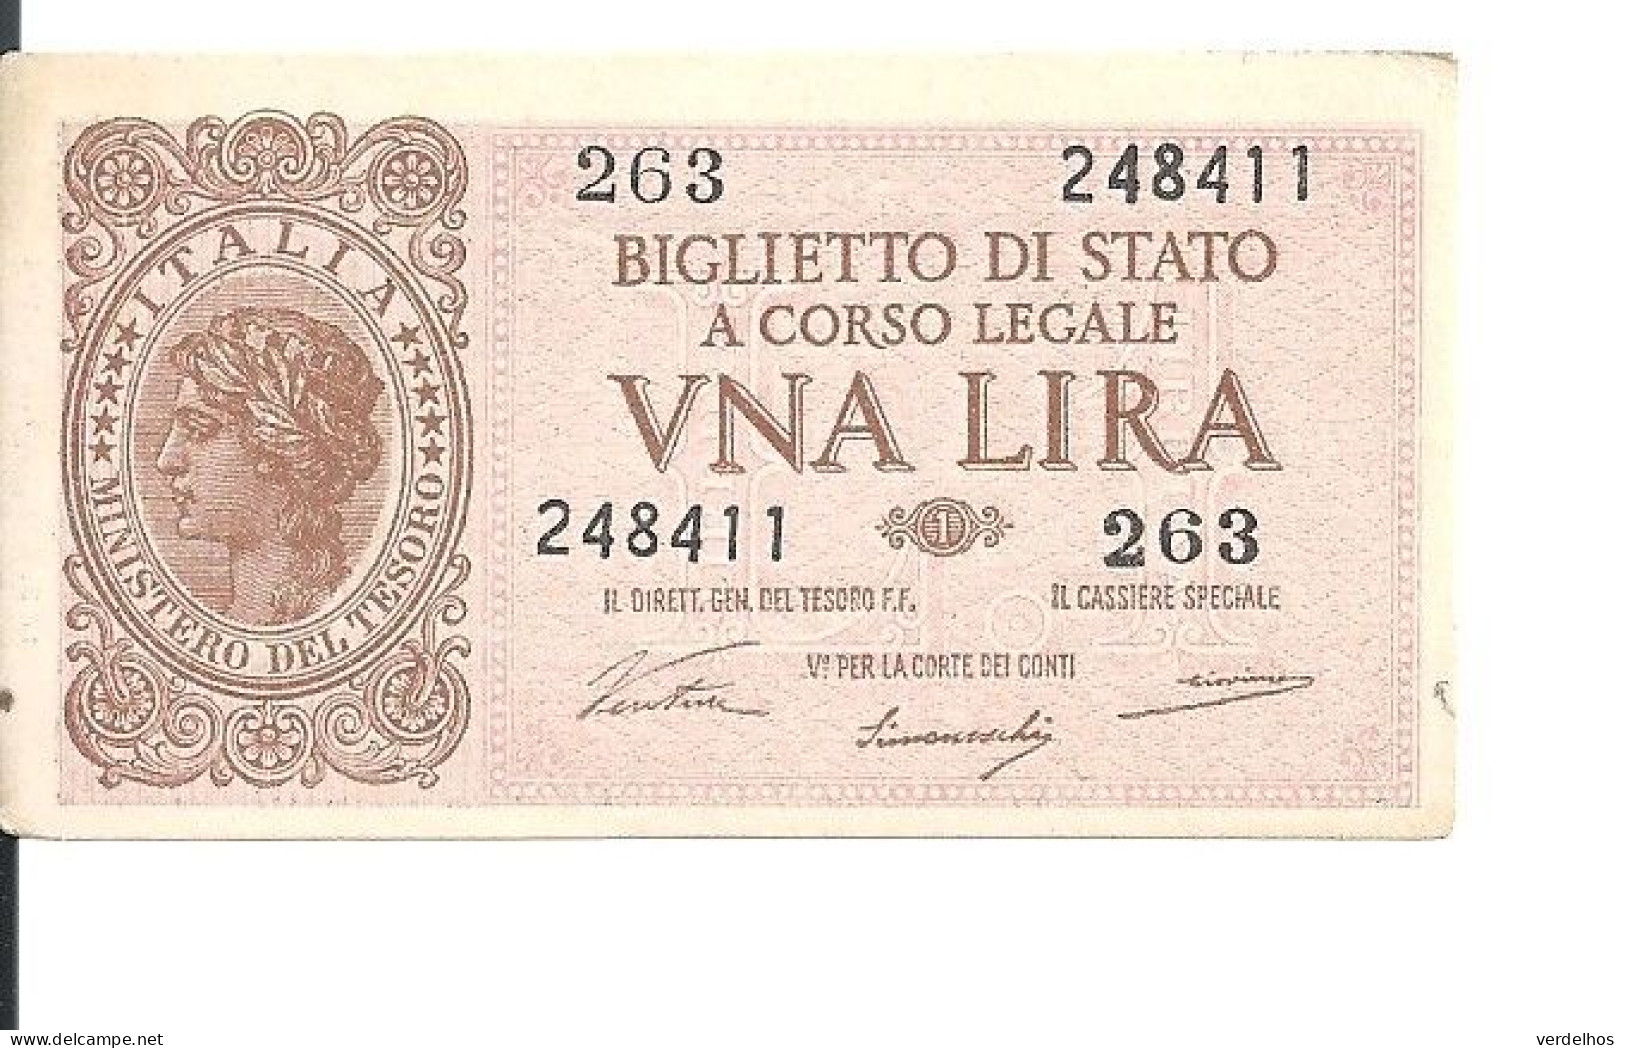 ITALIE 1 LIRE 1944 VF+ P 29 A - Regno D'Italia – 1 Lira